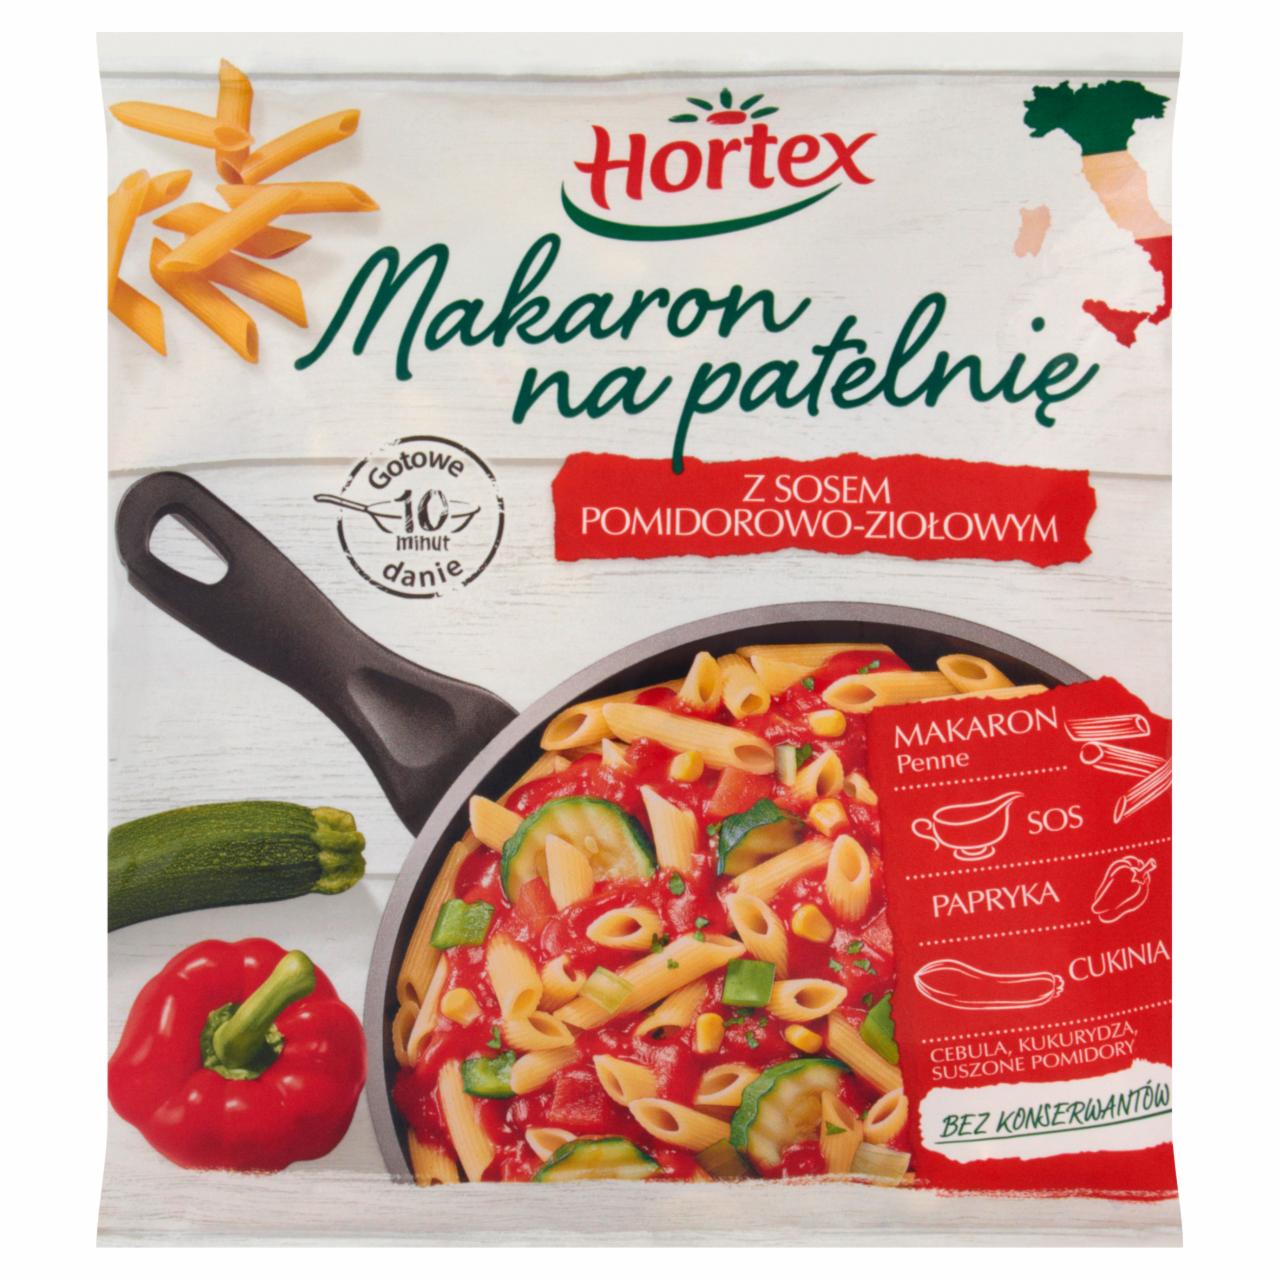 Zdjęcia - Hortex Makaron na patelnię z sosem pomidorowo-ziołowym 450 g